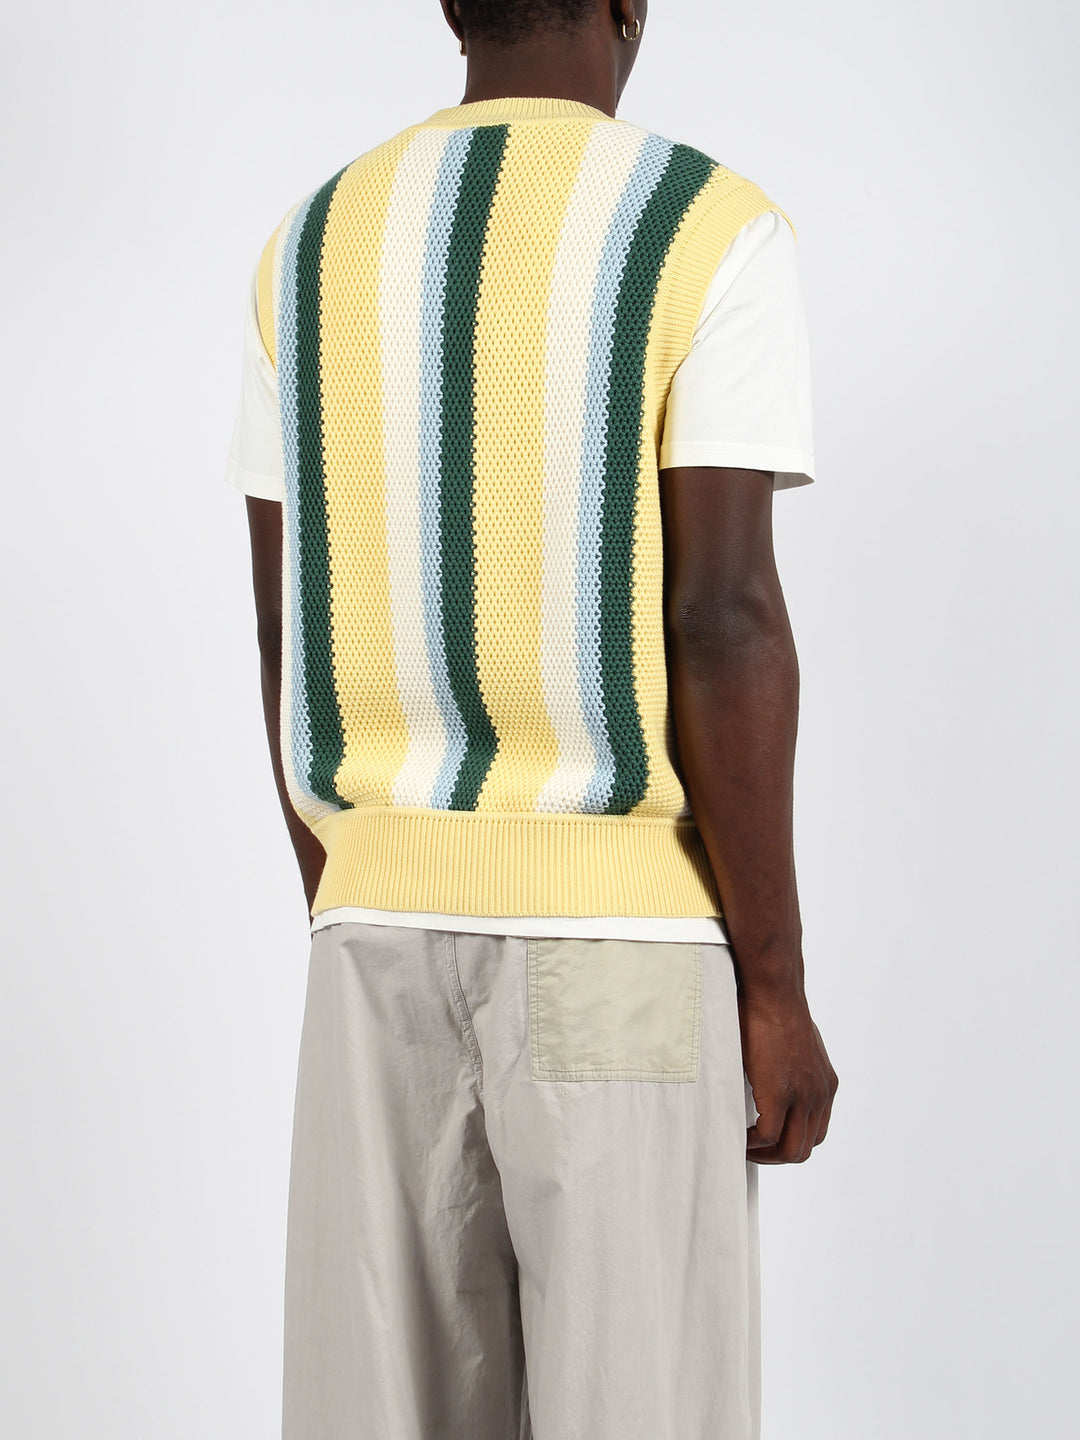 Cotton knit vest